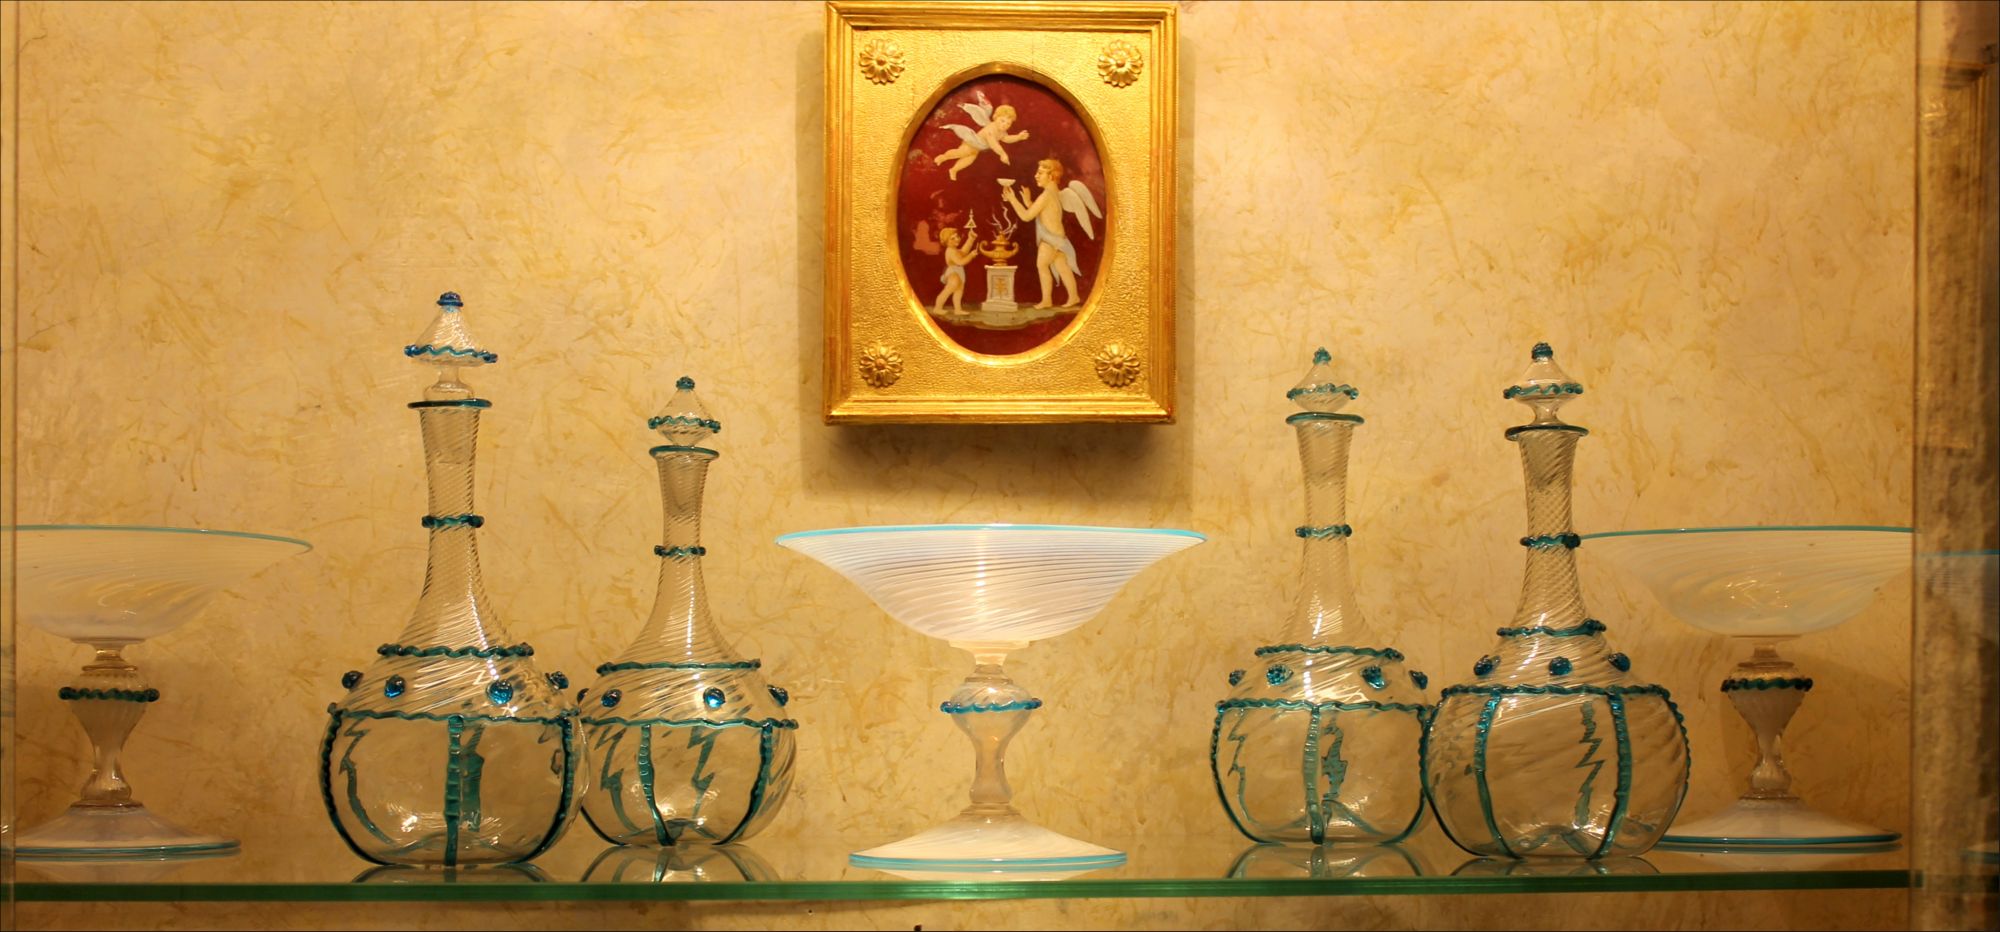 https://artorigo.com/ao_products/3803/l/furniture-glass-objects-18th-century-1700-1799-rococo-murano-galleria-antonio-esposito-di-chiara-esposito-17122.JPG